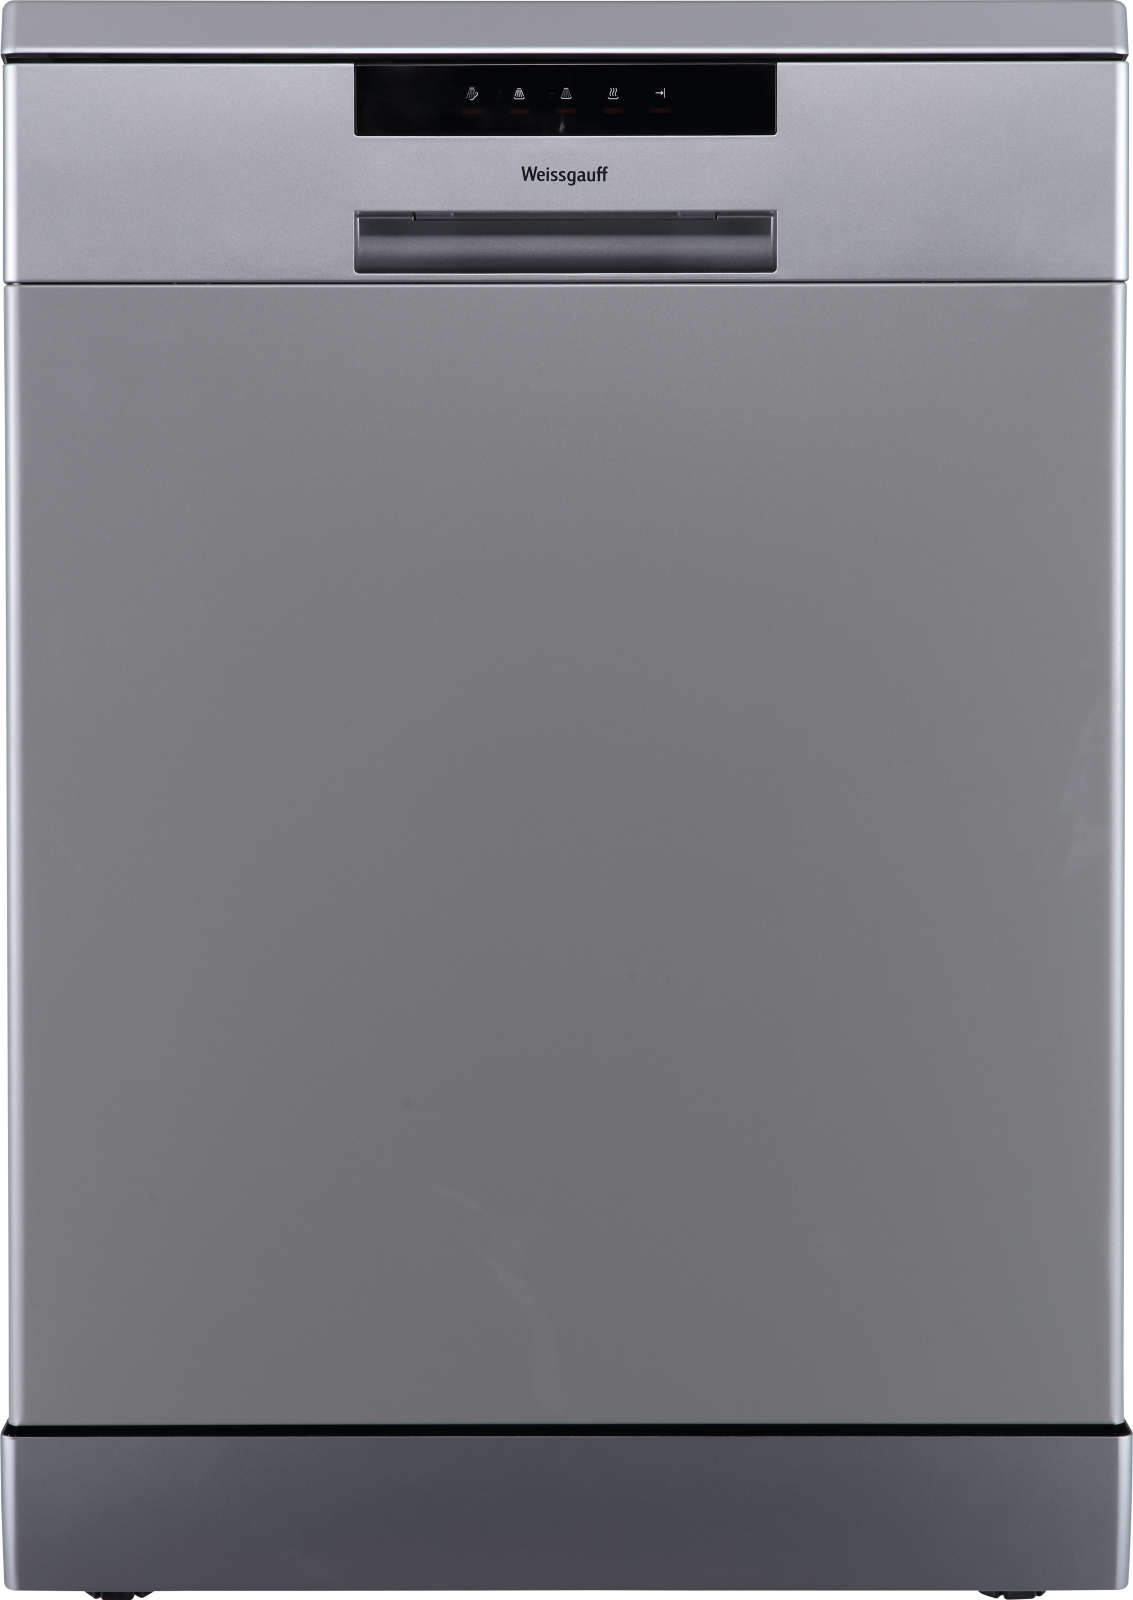 Посудомоечная машина Weissgauff DW 6013 Inox серебристый посудомоечная машина weissgauff dw 4015